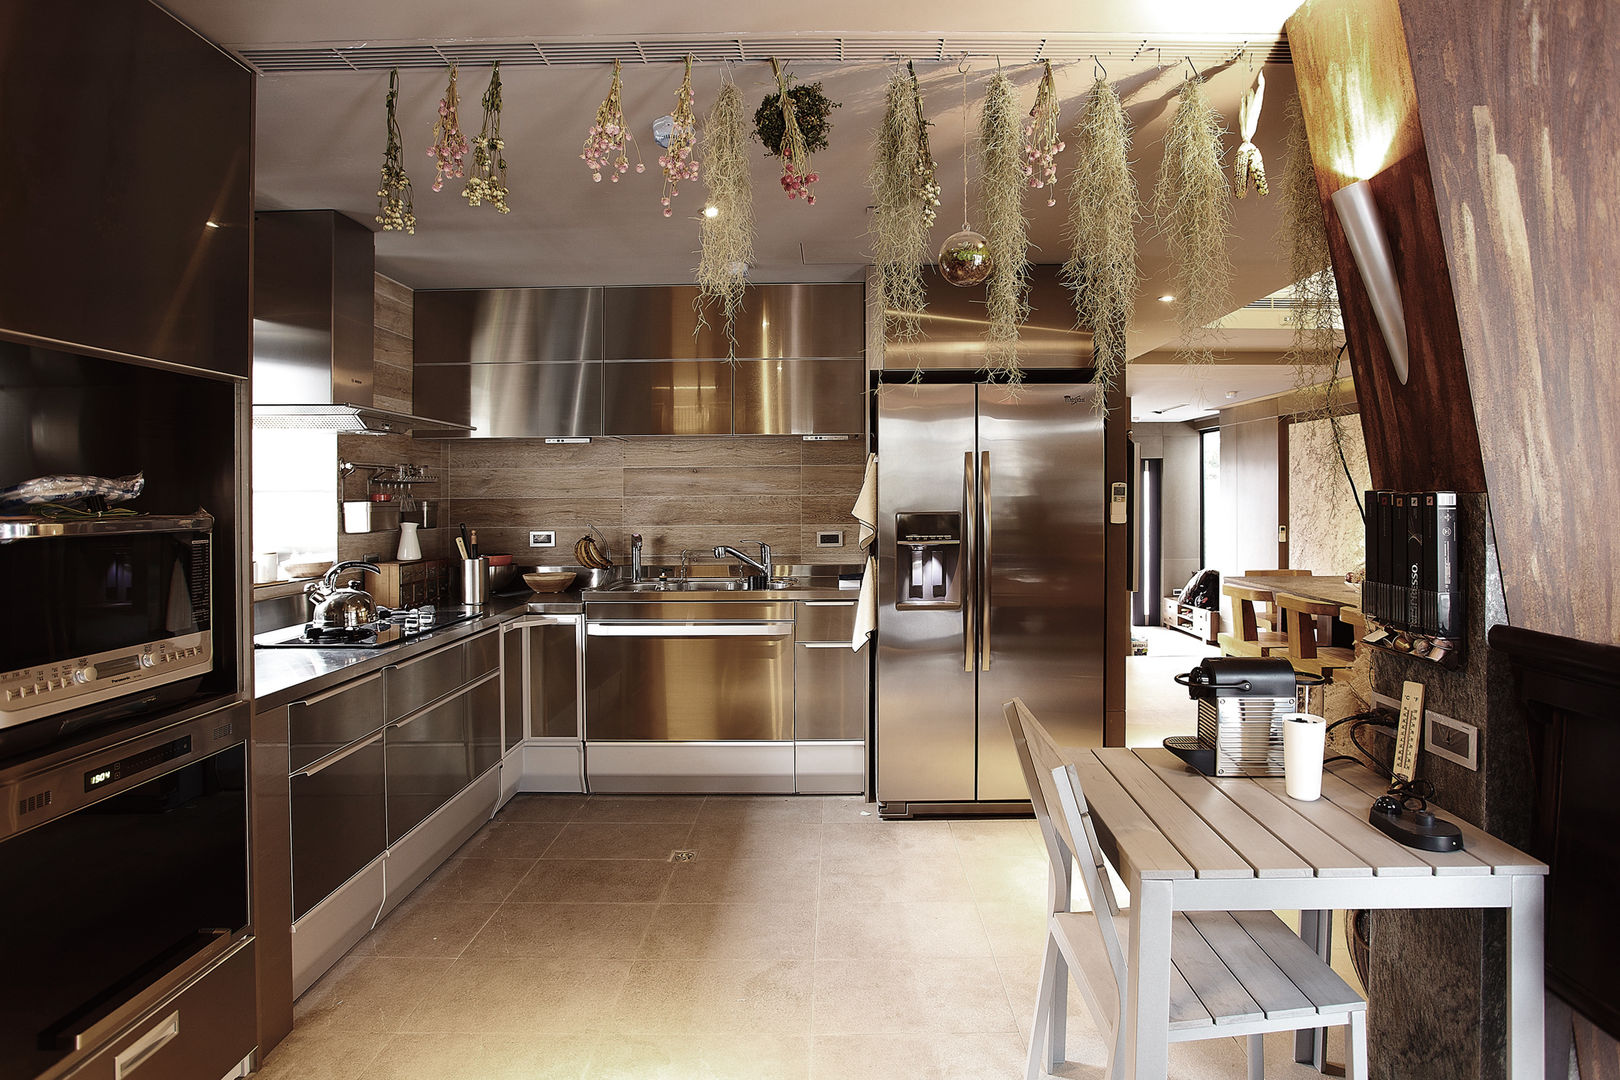 偶像劇豪宅大曝光, 戎馬整合設計 戎馬整合設計 Asian style kitchen